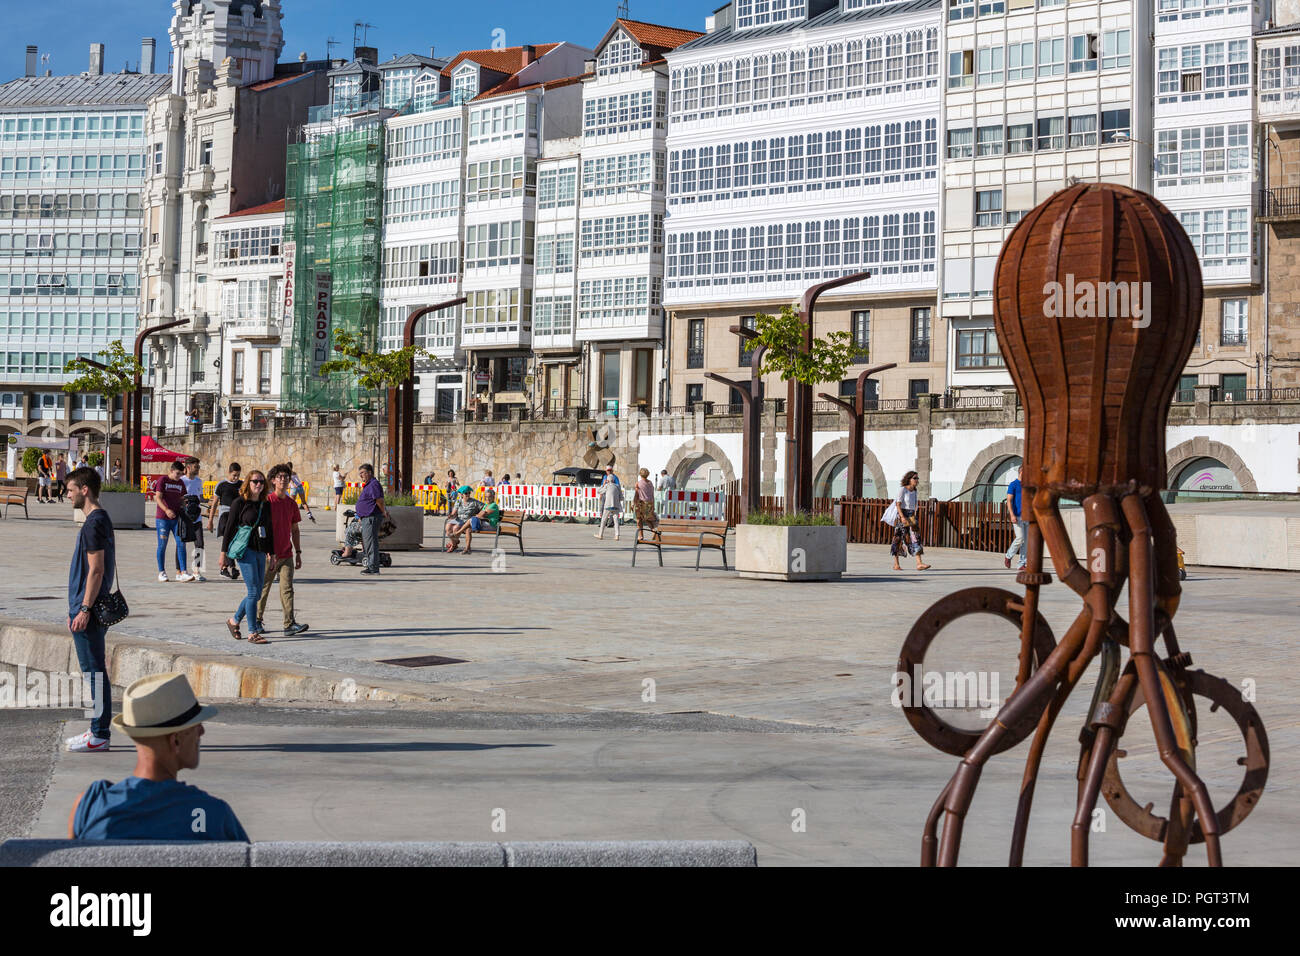 Rusted metal Pulpo escultura en la Explanada Do Parrote, Paseo de la Dársena, A Coruña, España Foto de stock